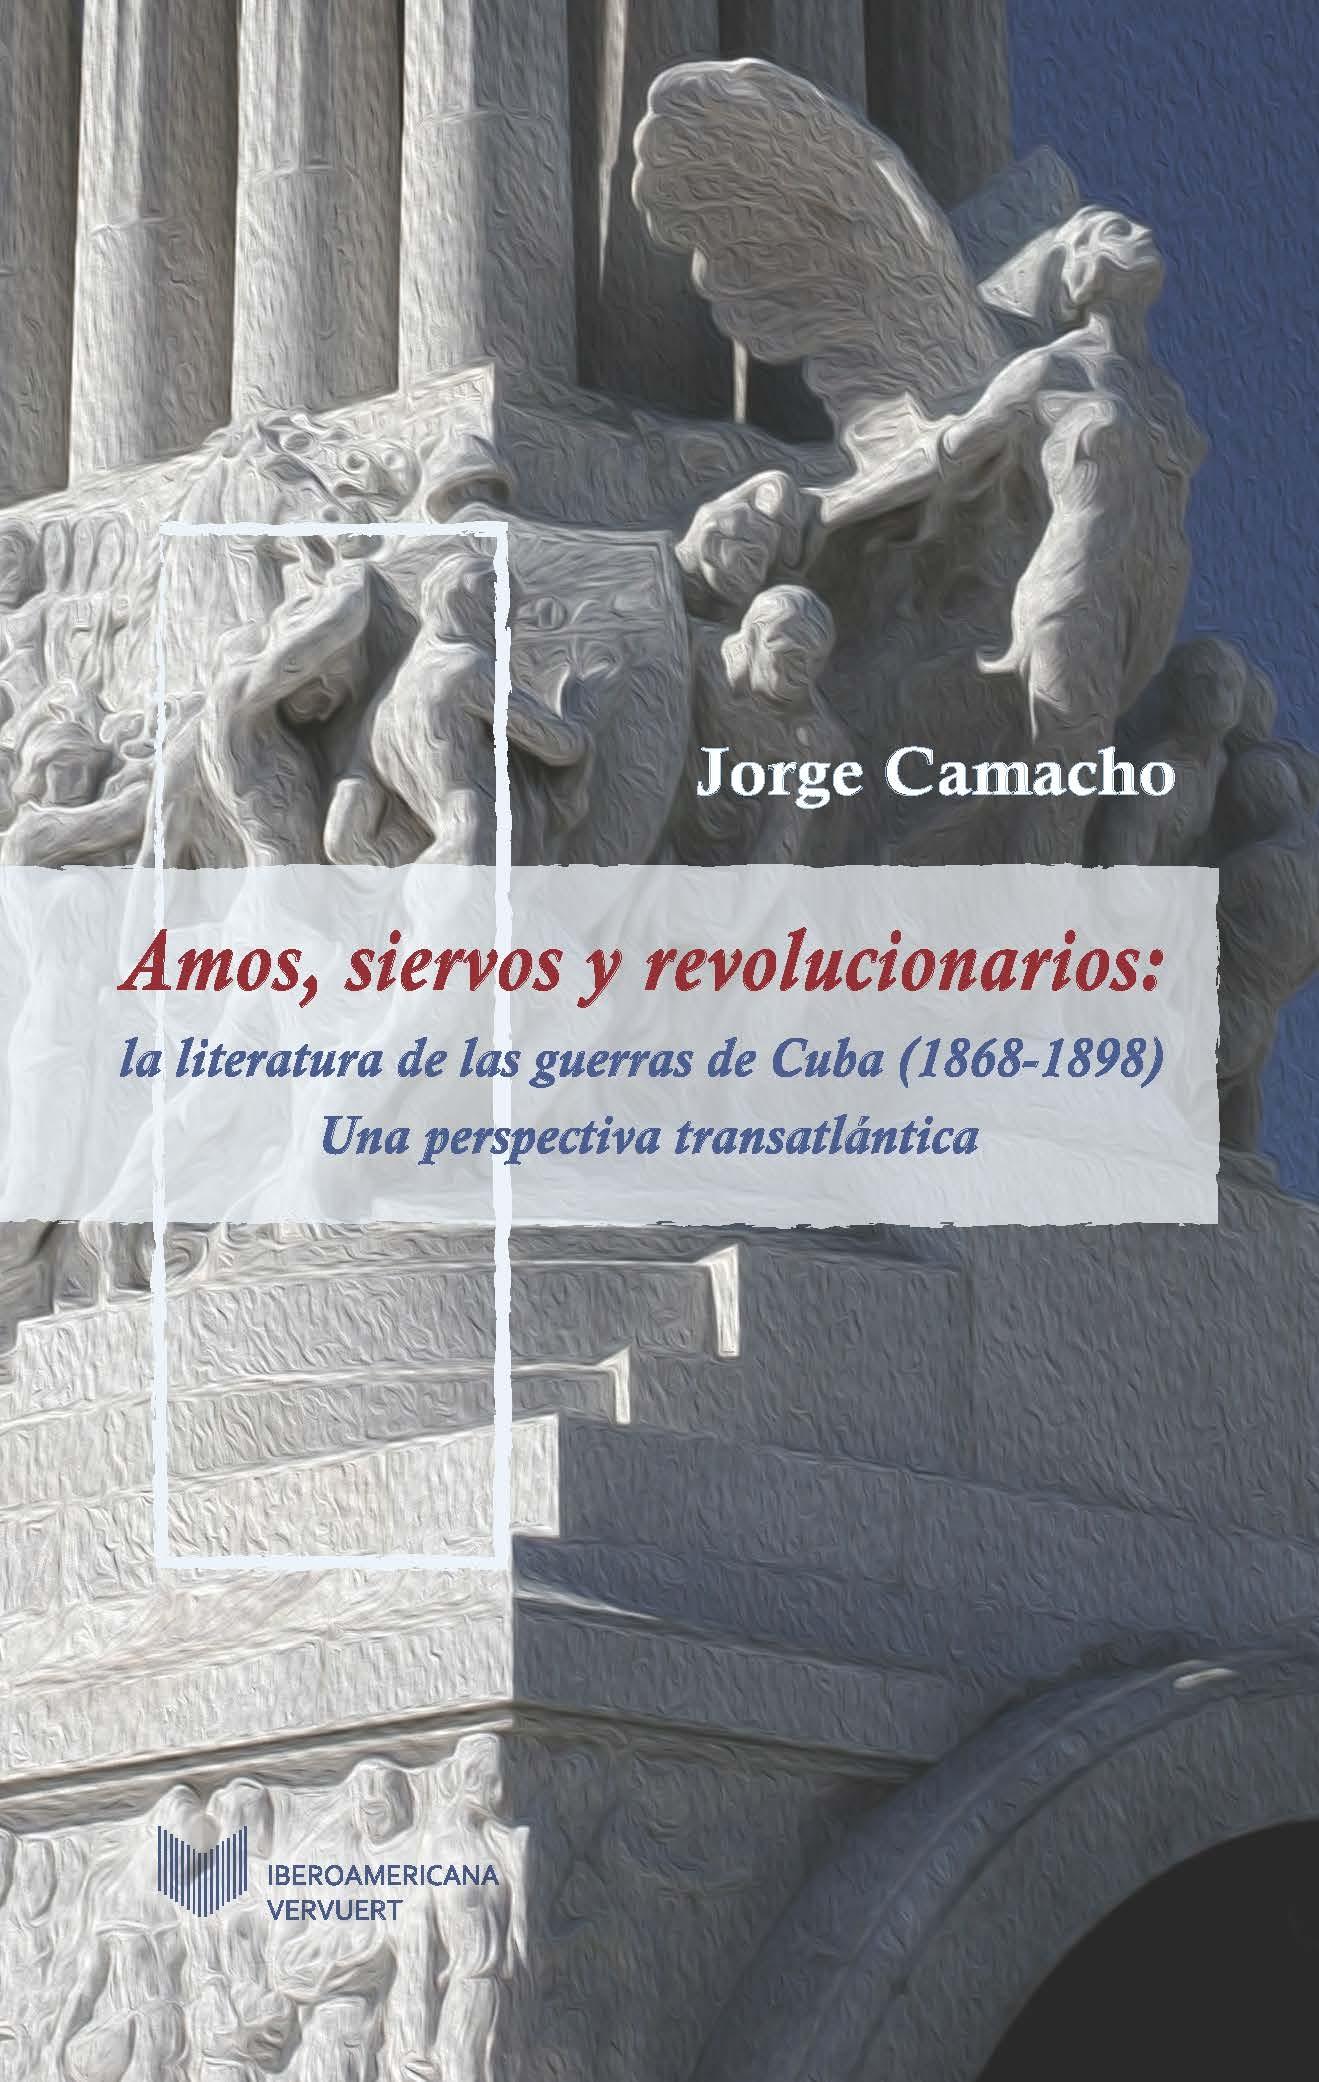 Amos, siervos y revolucionarios: la literatura de las guerras de Cuba (1868-1898) "Una perspectiva transatlántica". 